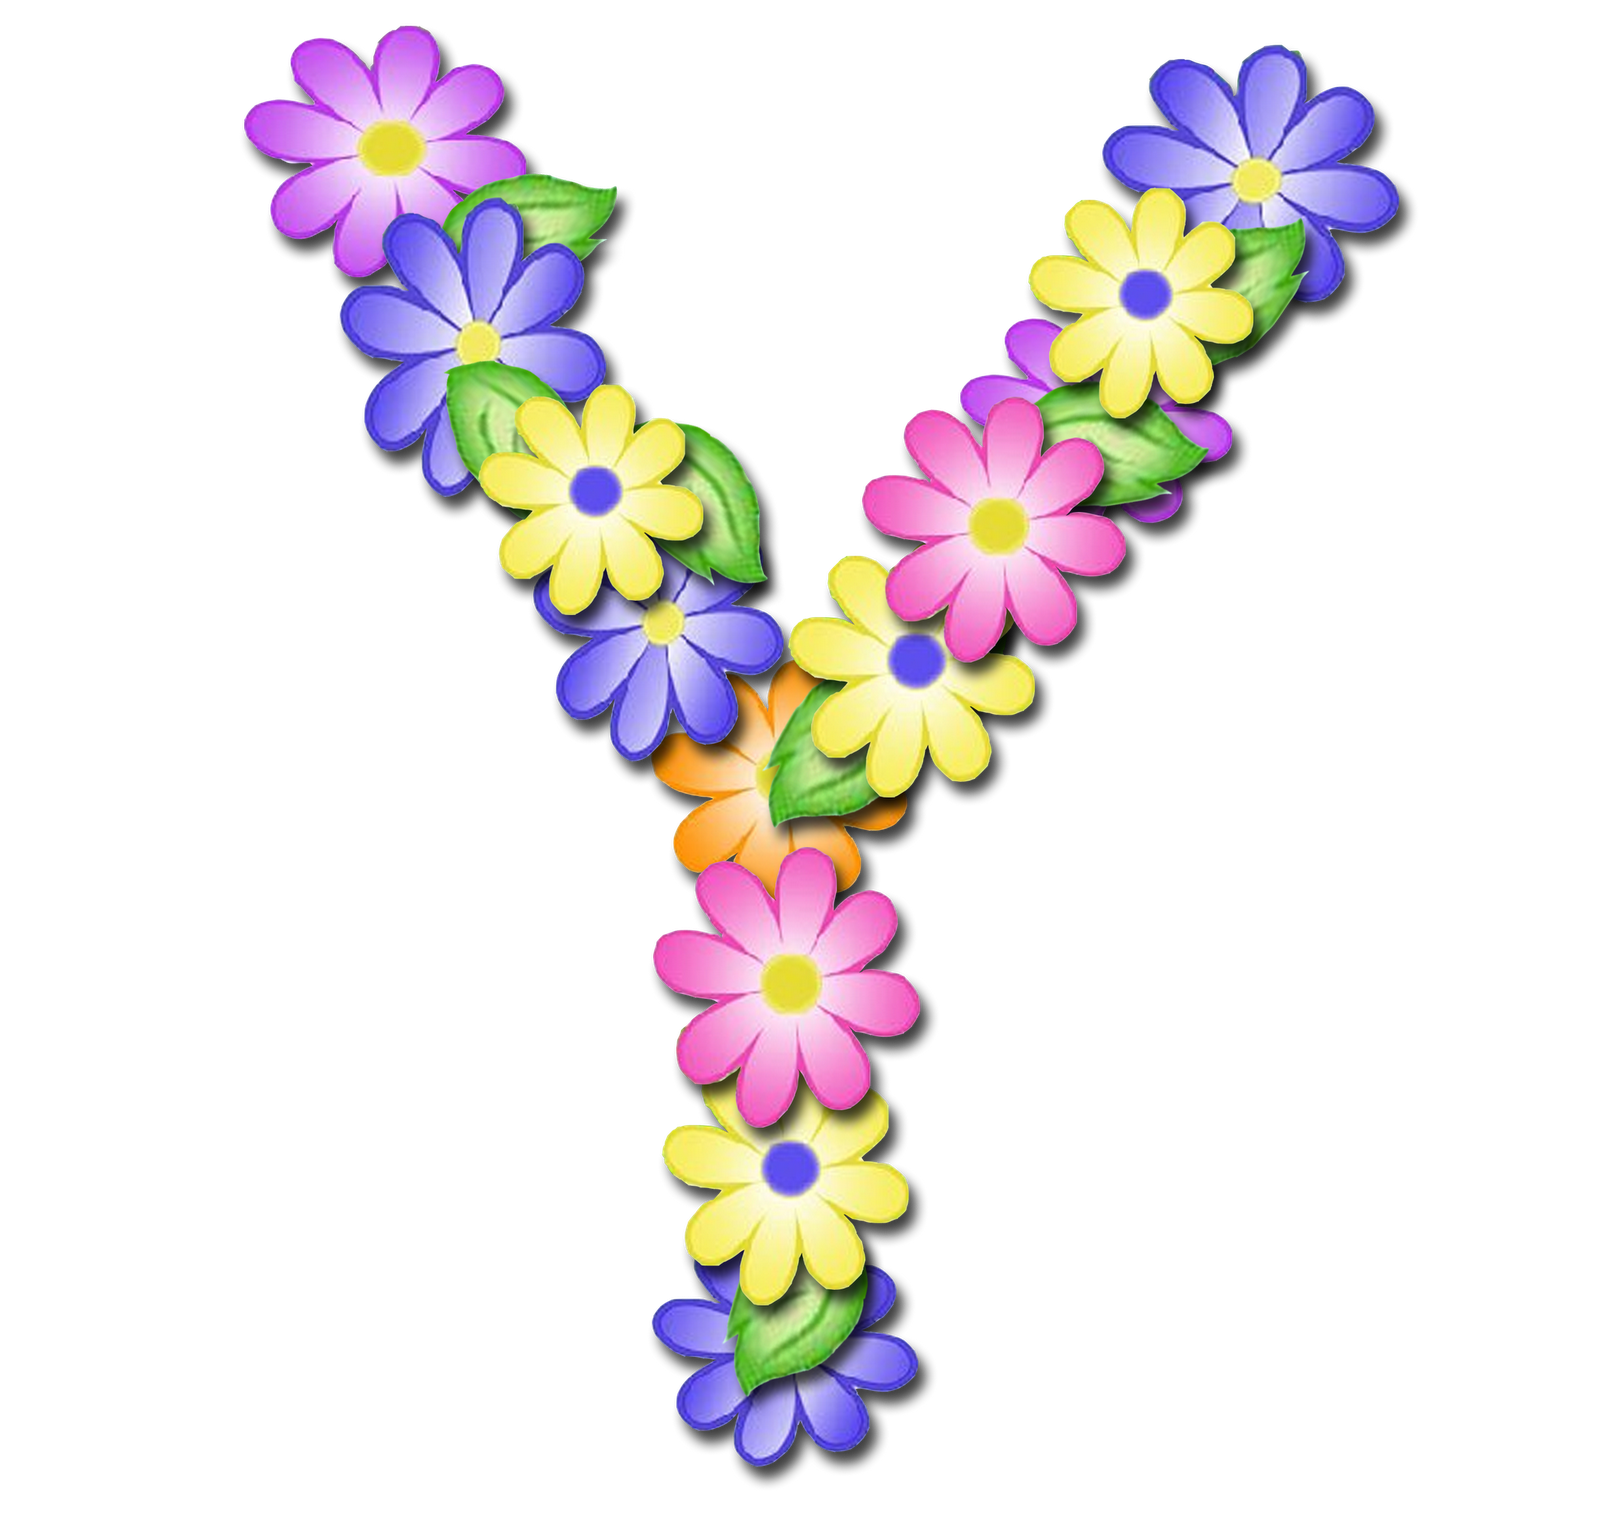 صور الحروف الإنجليزية بأجمل الزهور والورود بخلفية شفافة بنج png وجودة عالية للمصممين :: إبحث عن حروف إسمك بالإنجليزية - صفحة 3 P_16992fsmx1